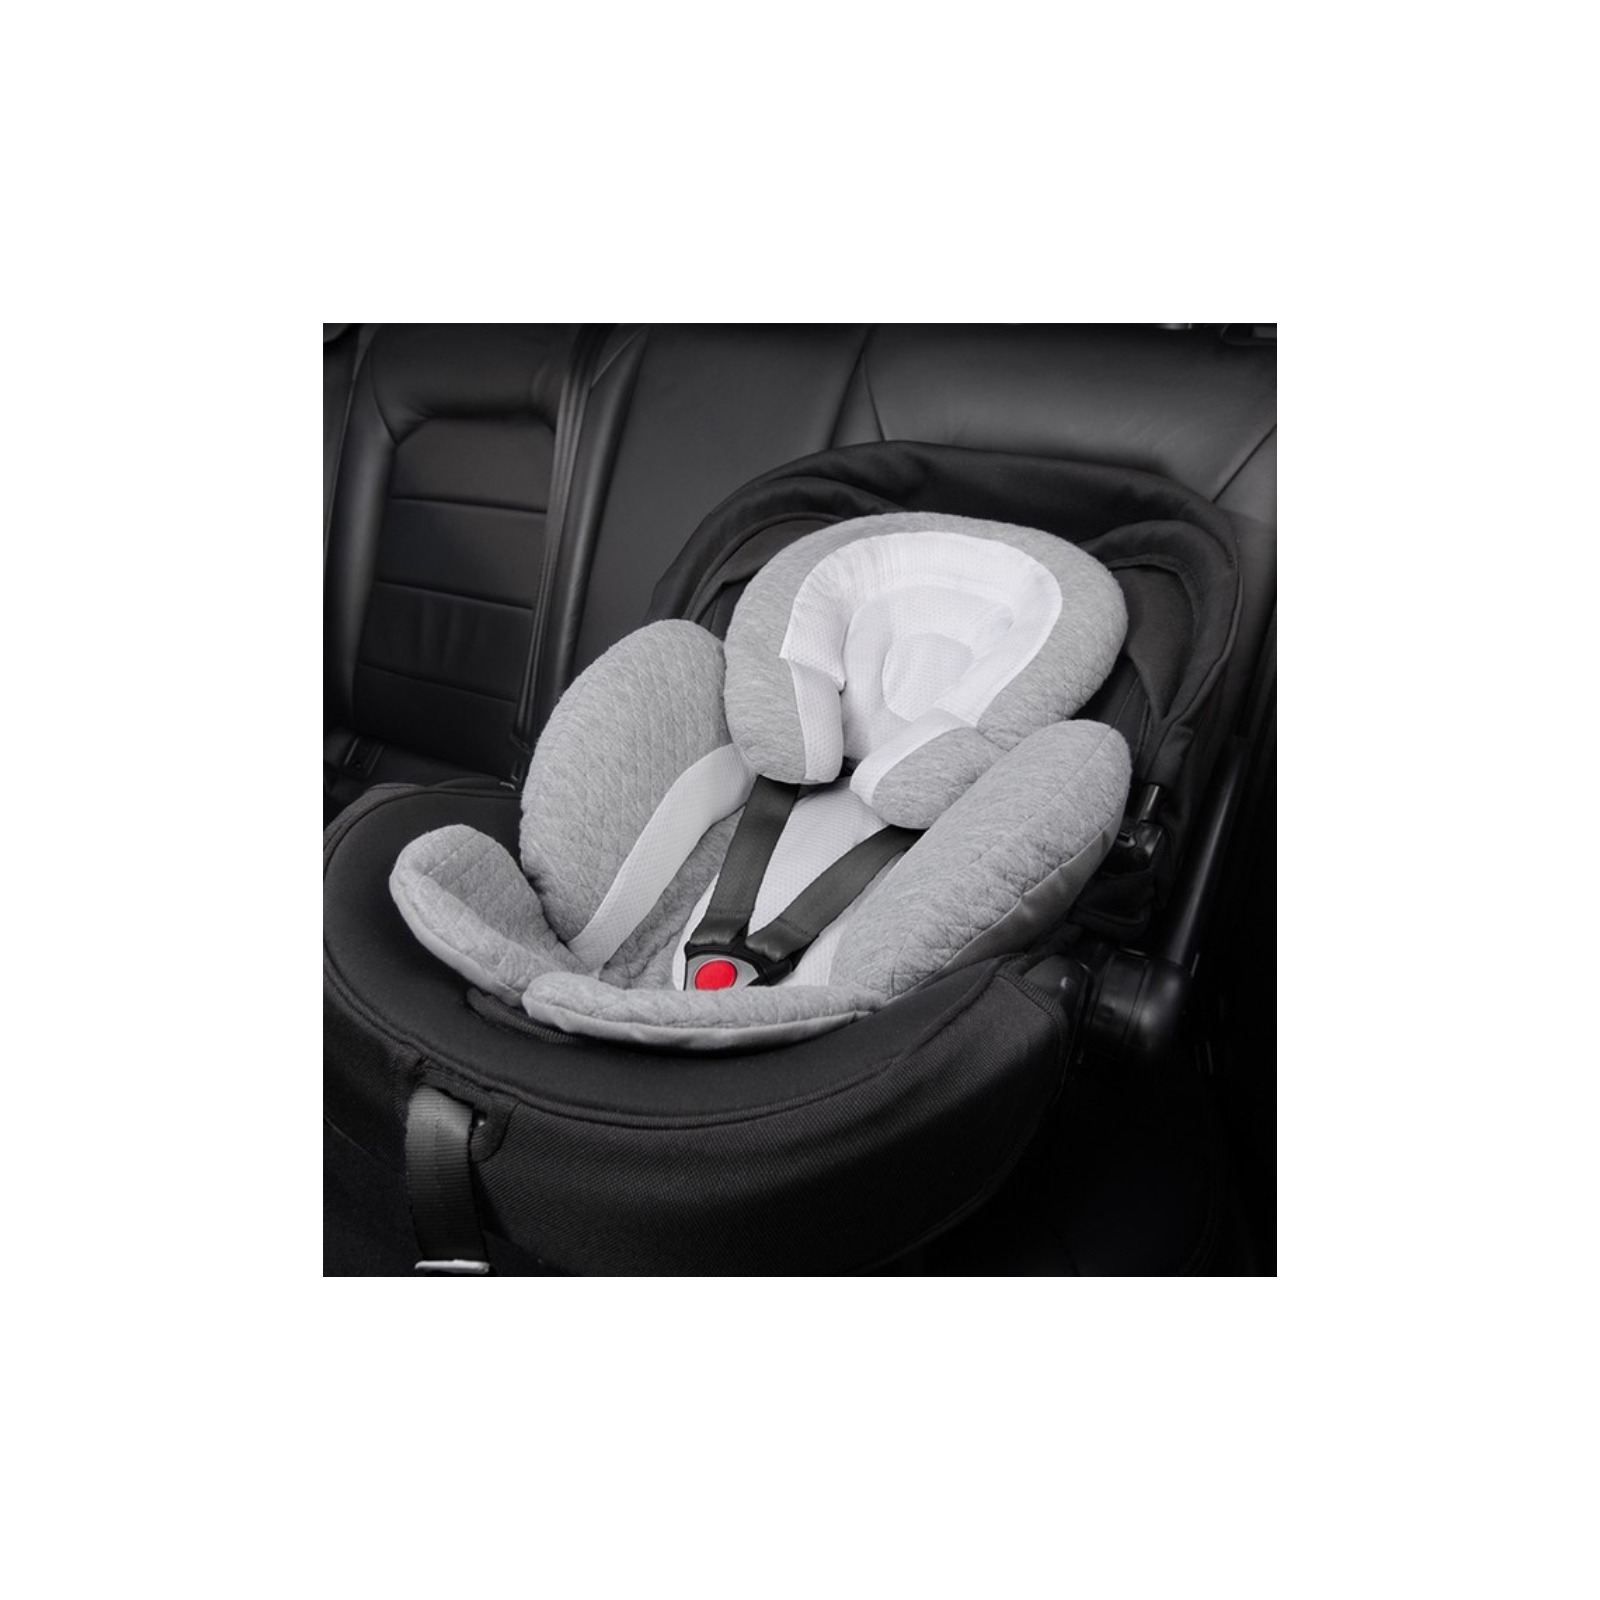 Reductor para coche y baby silla BUBA – Quo Store